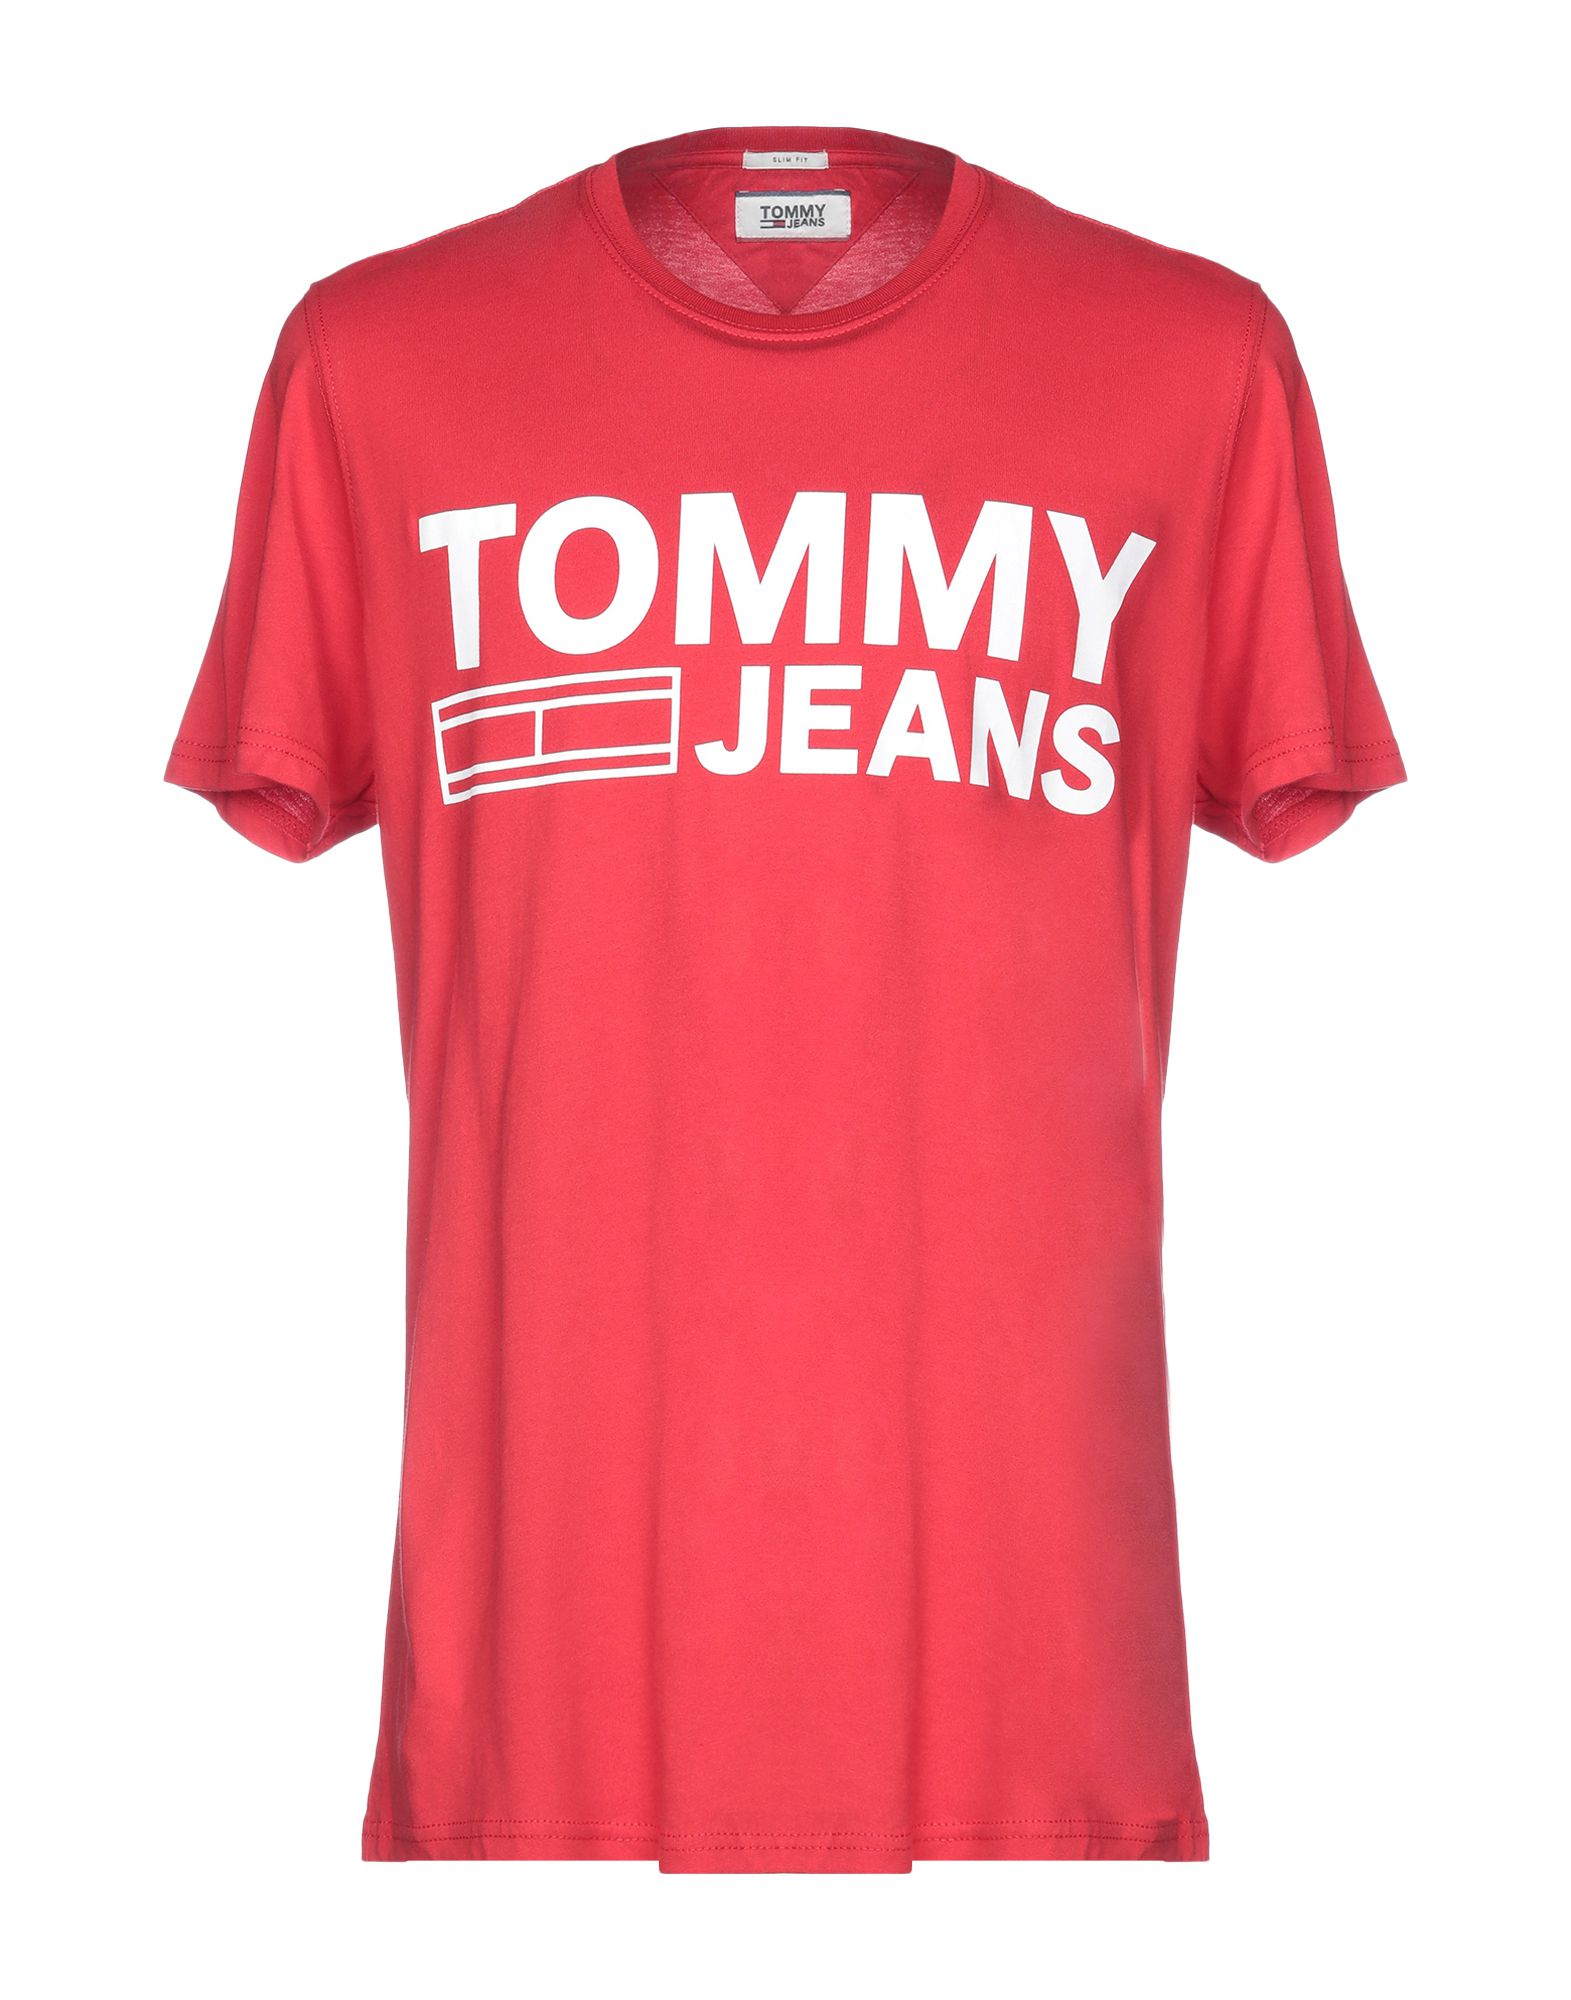 《送料無料》TOMMY JEANS メンズ T シャツ レッド XS コットン 100% TJM BASIC CN T-SHIRT S/S 37